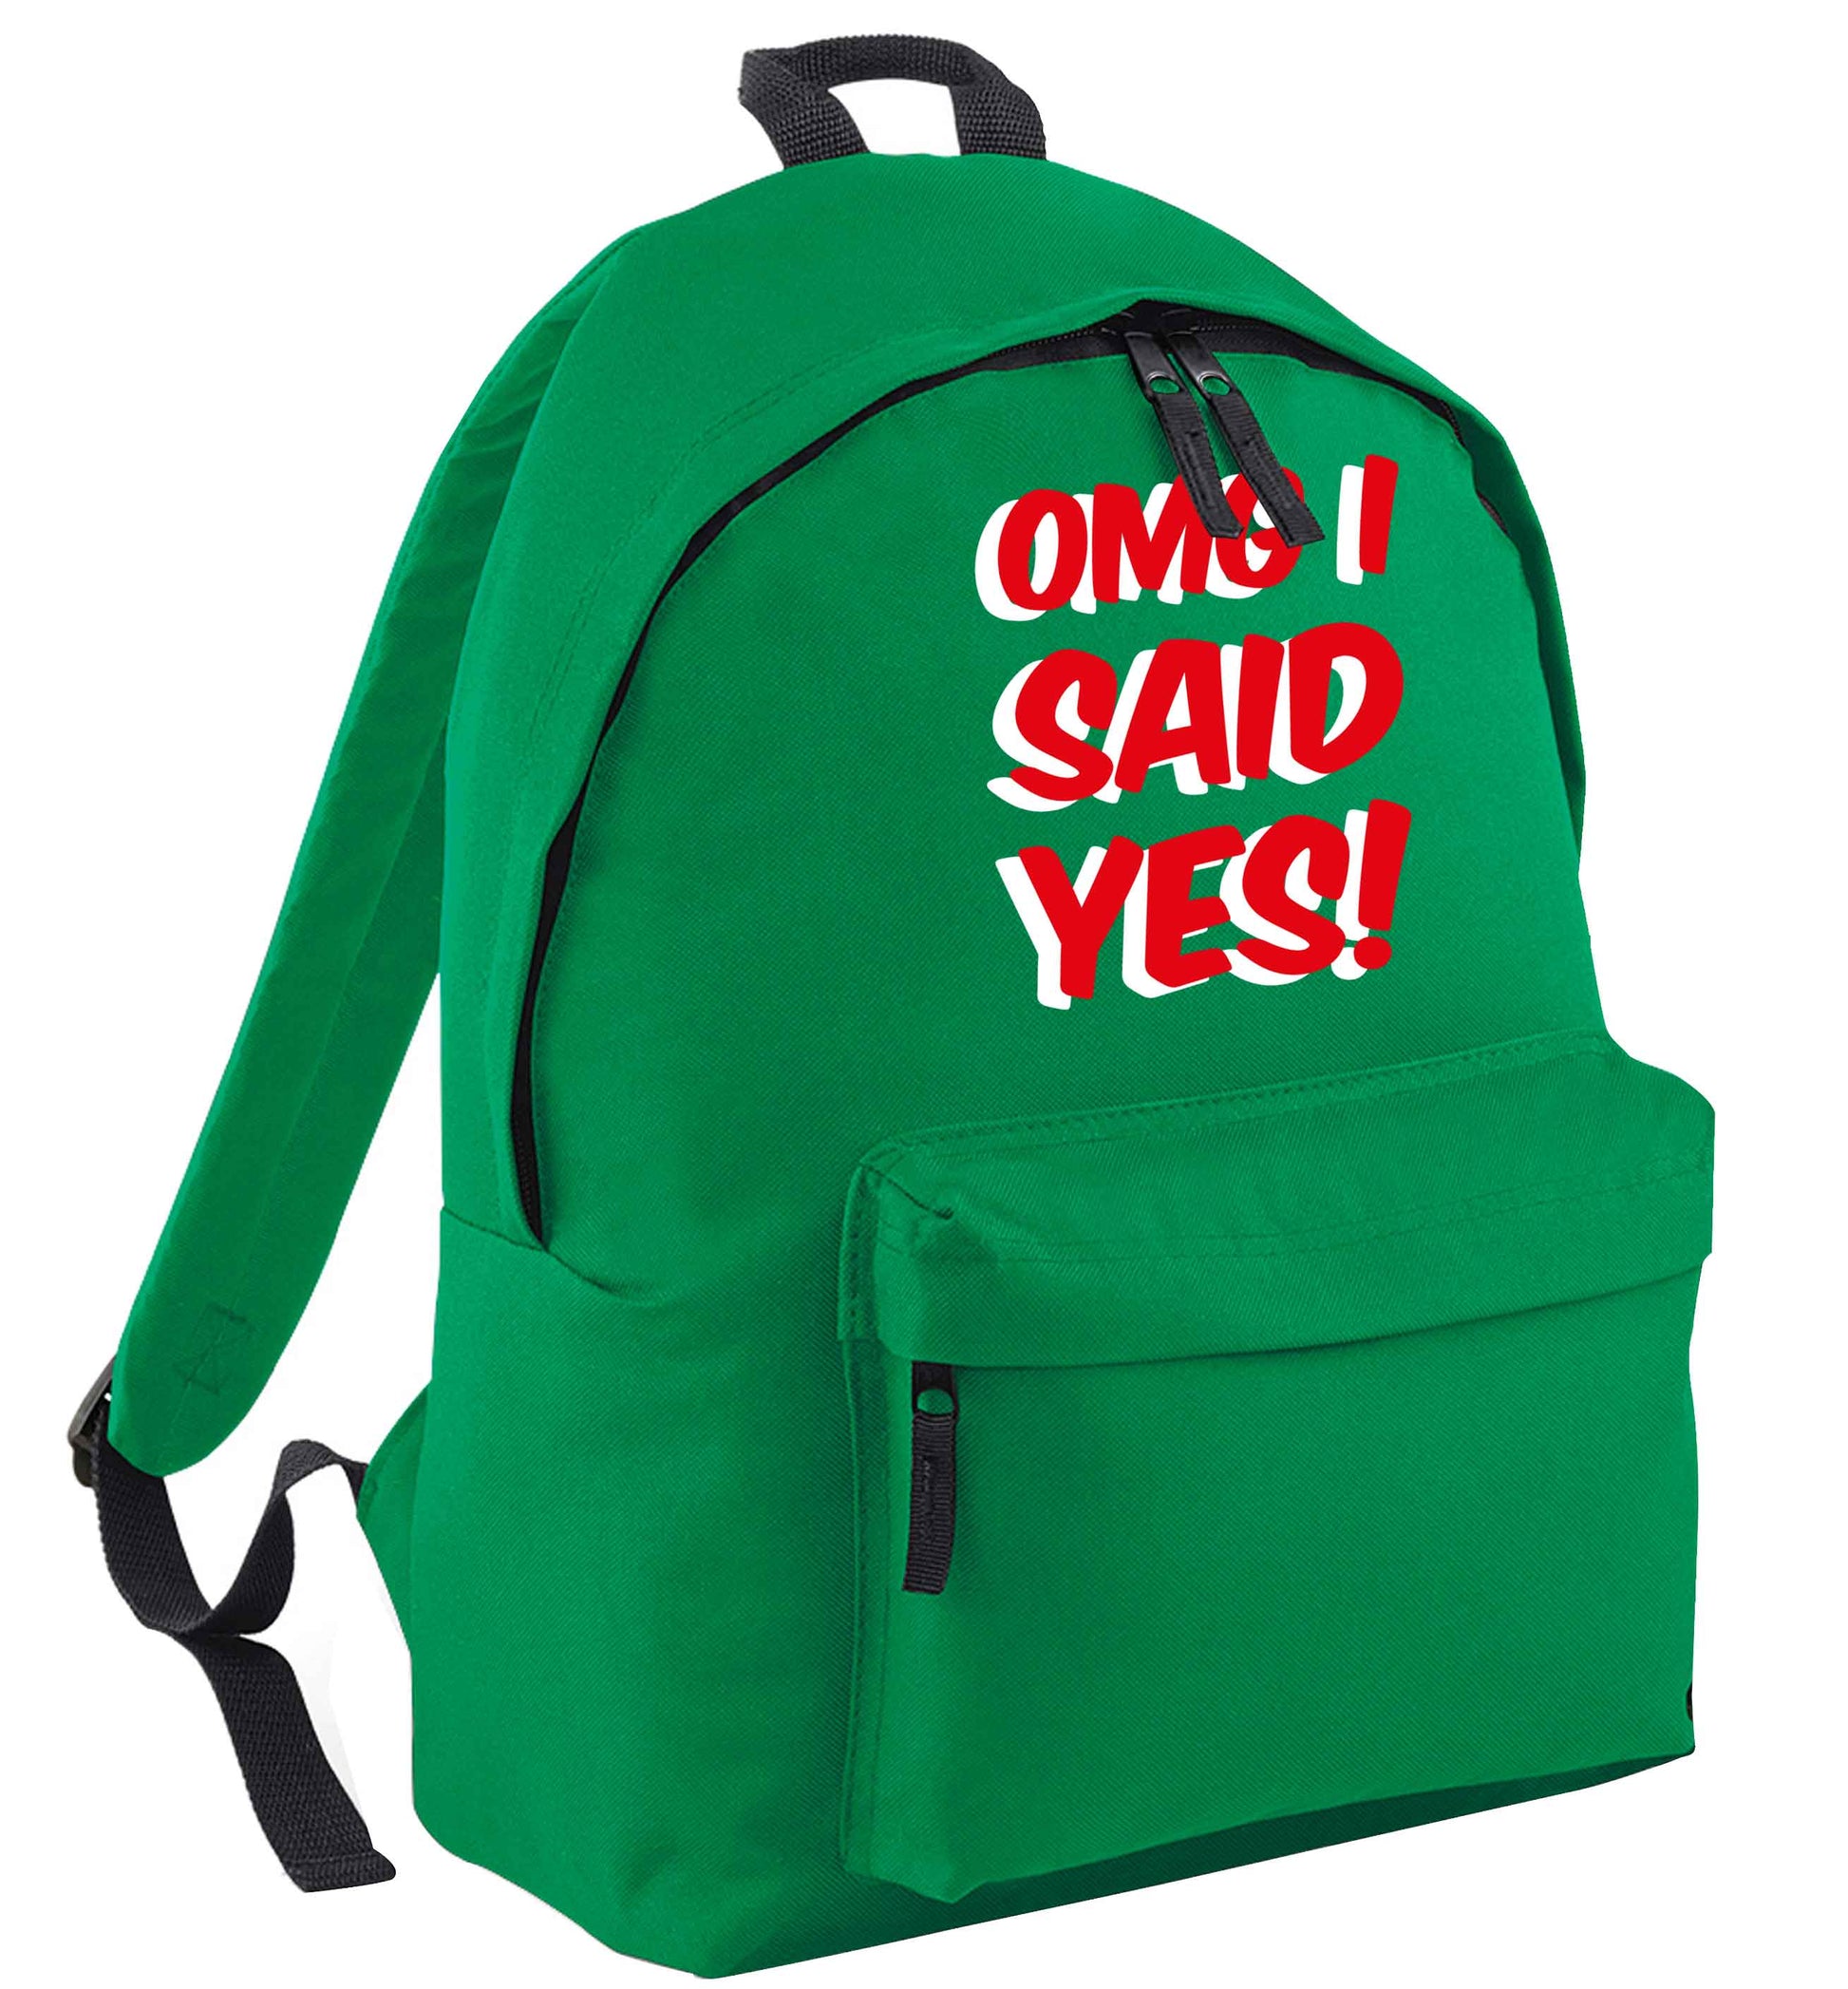 Omg I said yes green adults backpack